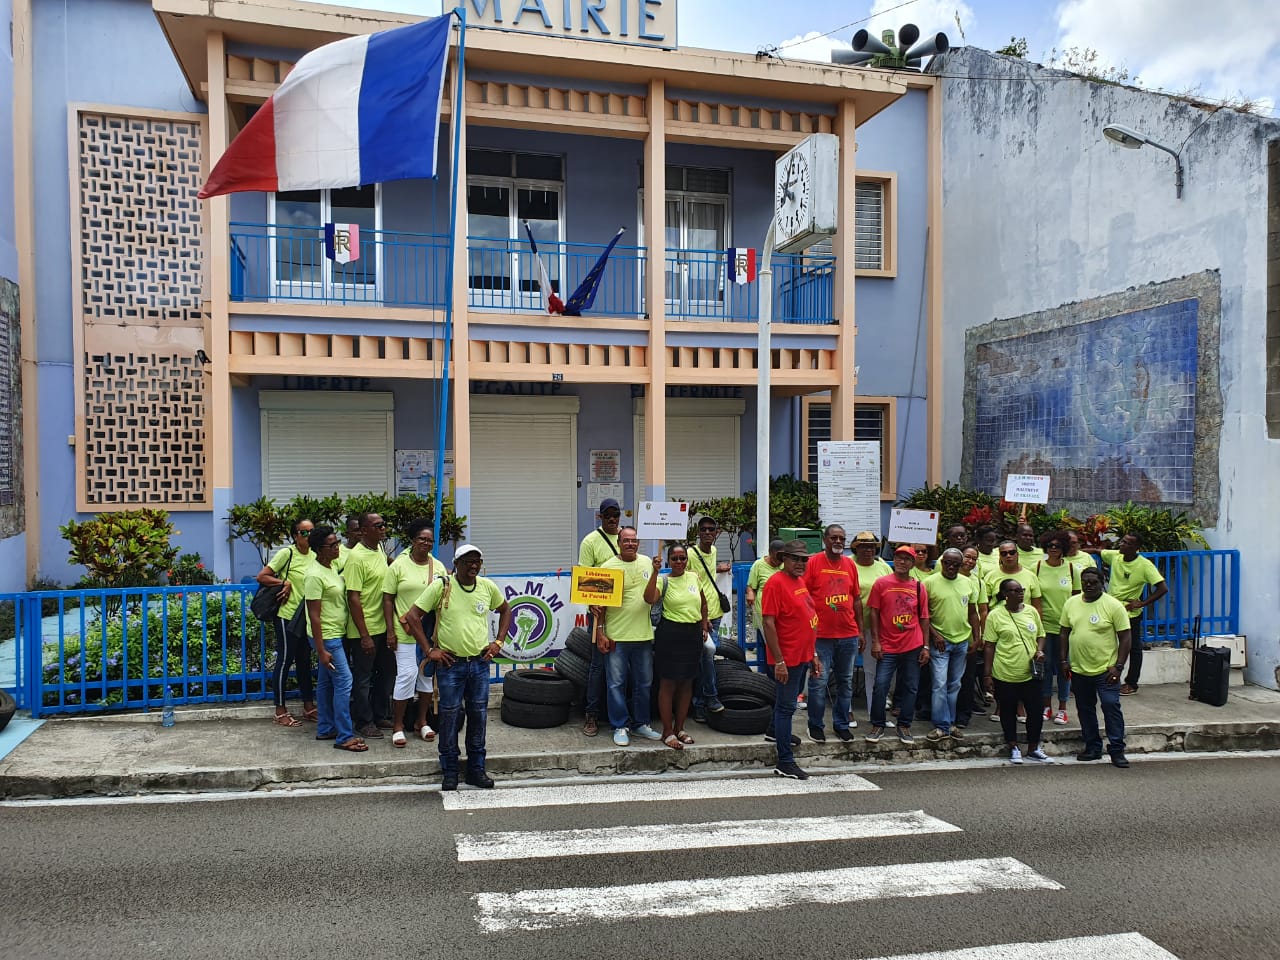     Des membres d'un syndicat mobilisés devant la mairie du Marin

